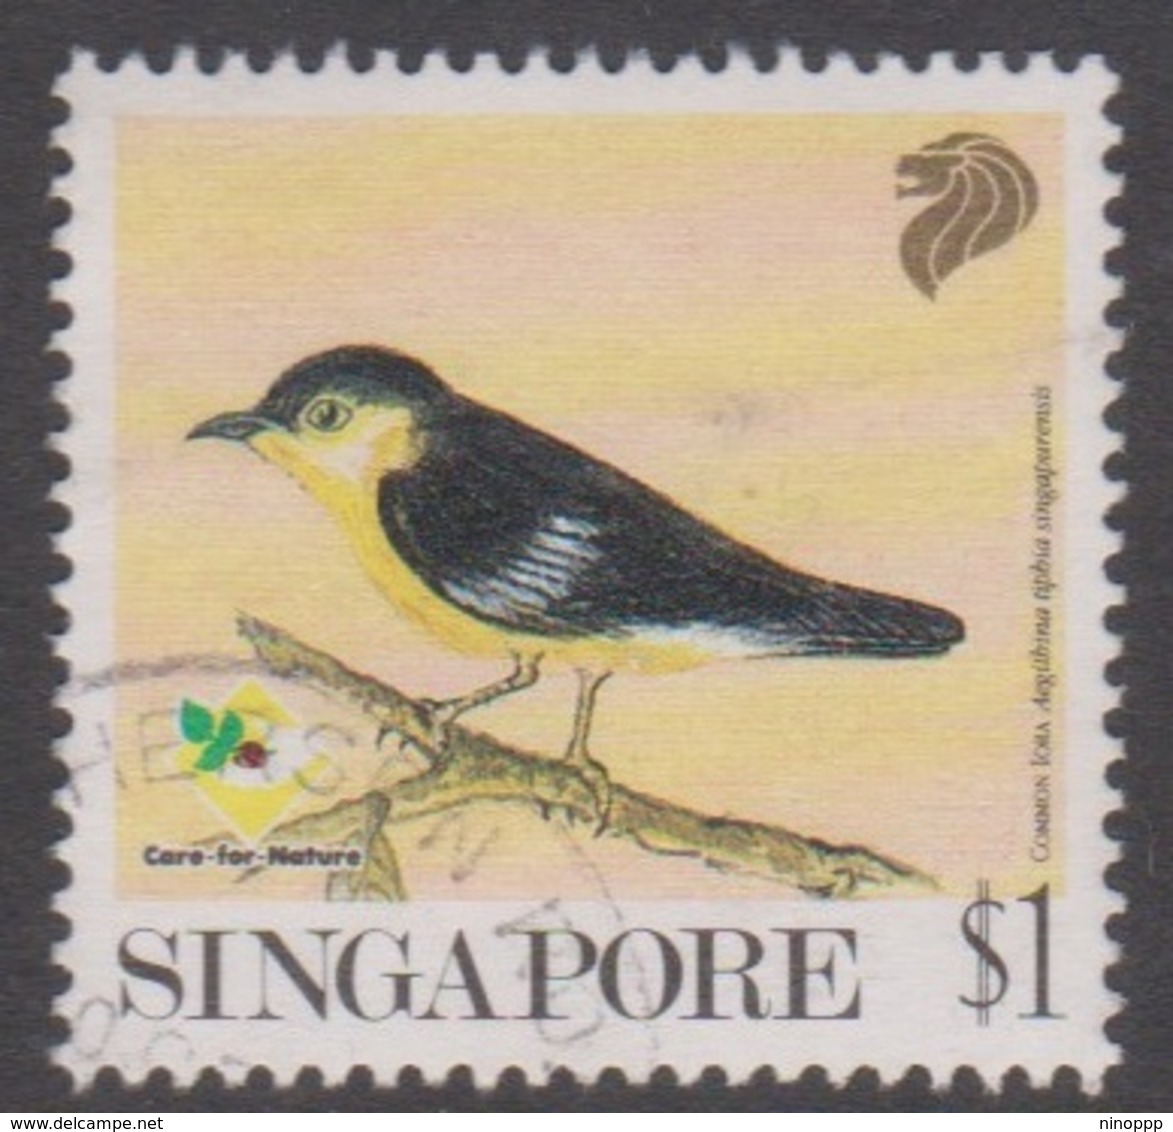 Singapore 670 1991 Garden Birds $ 1.00 Common Lora, Used - Singapore (1959-...)